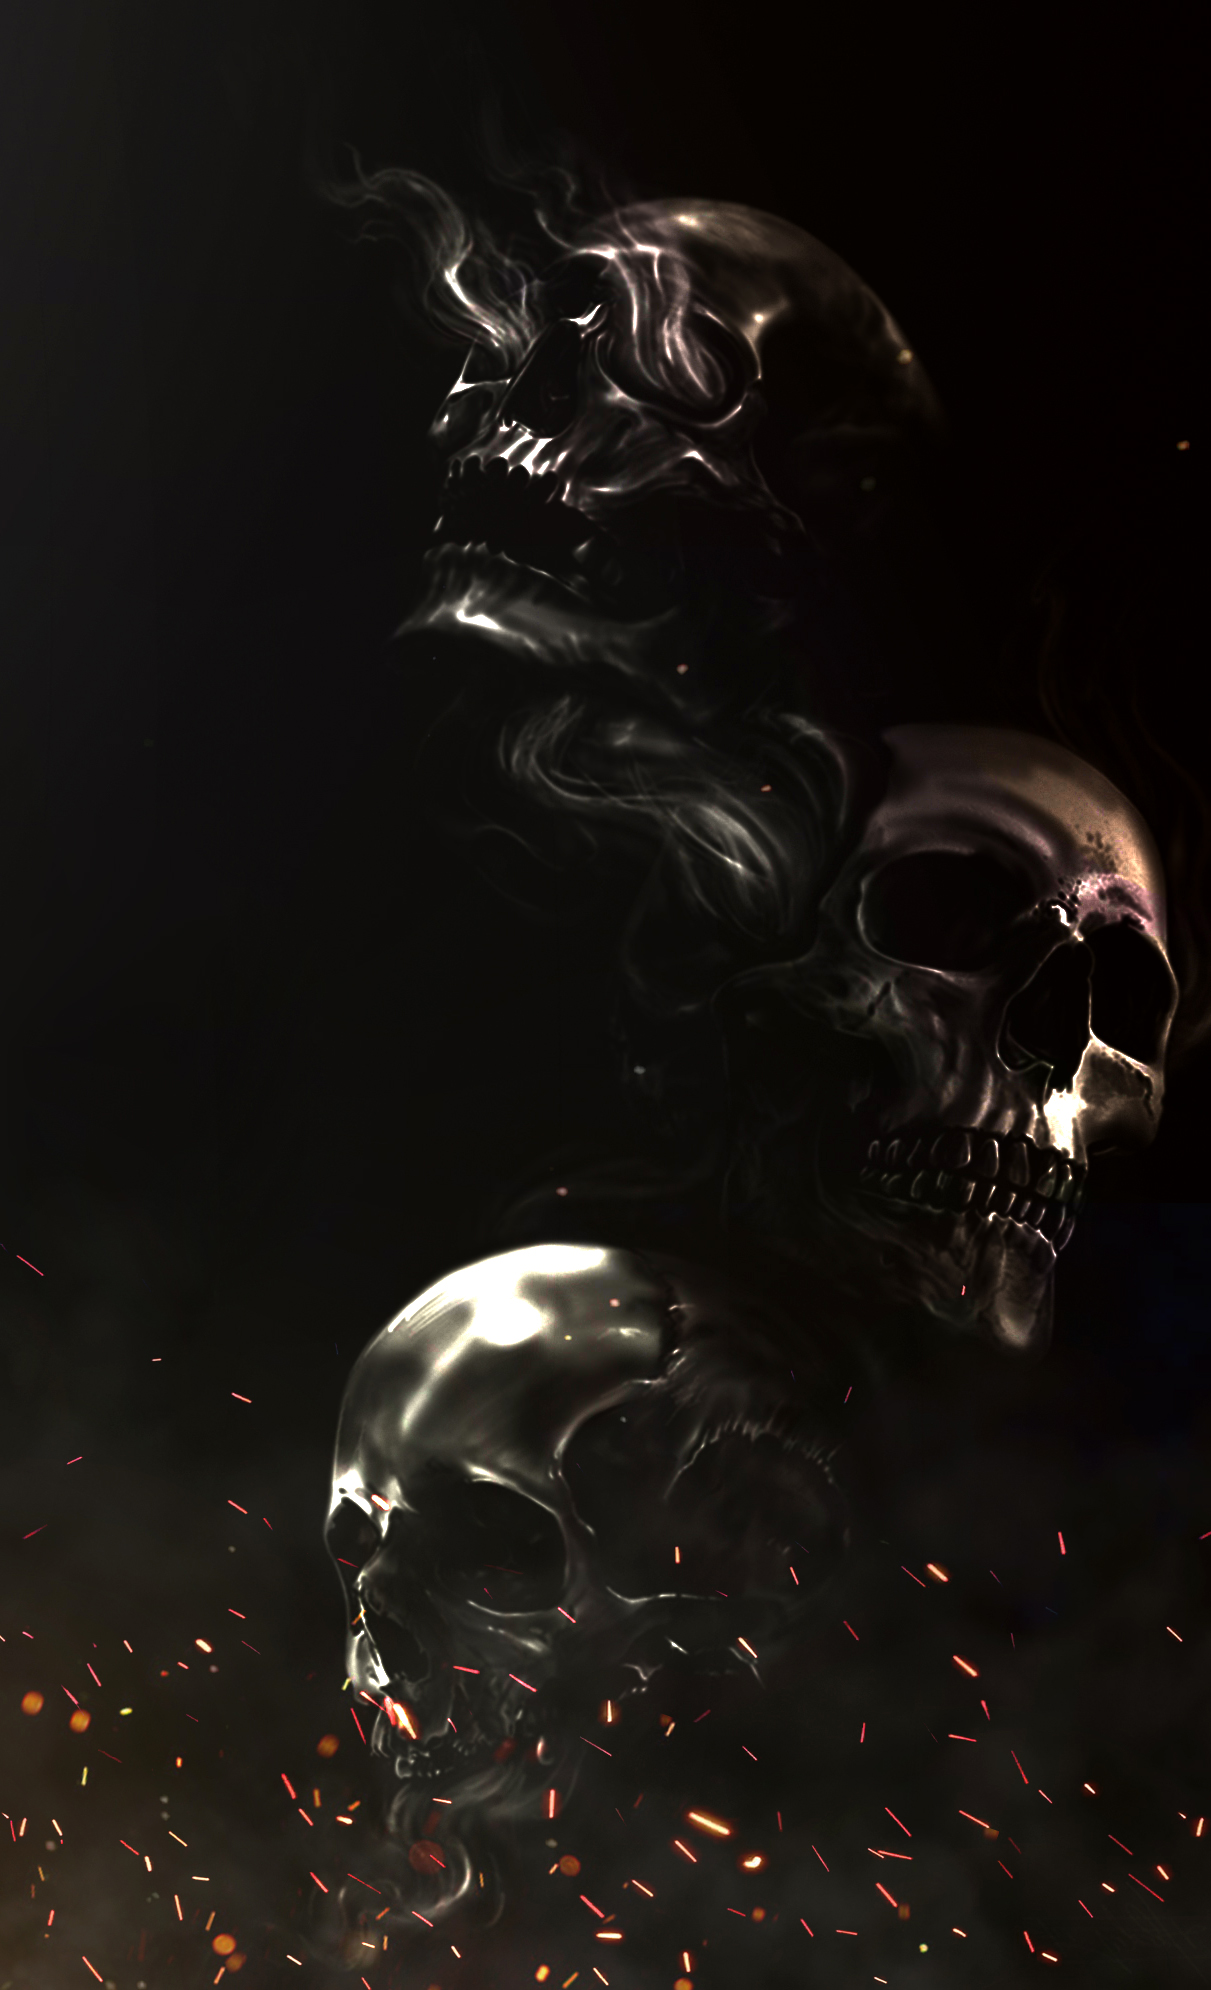 General 1211x1990 skull flares CGI dark fantasy art digital art